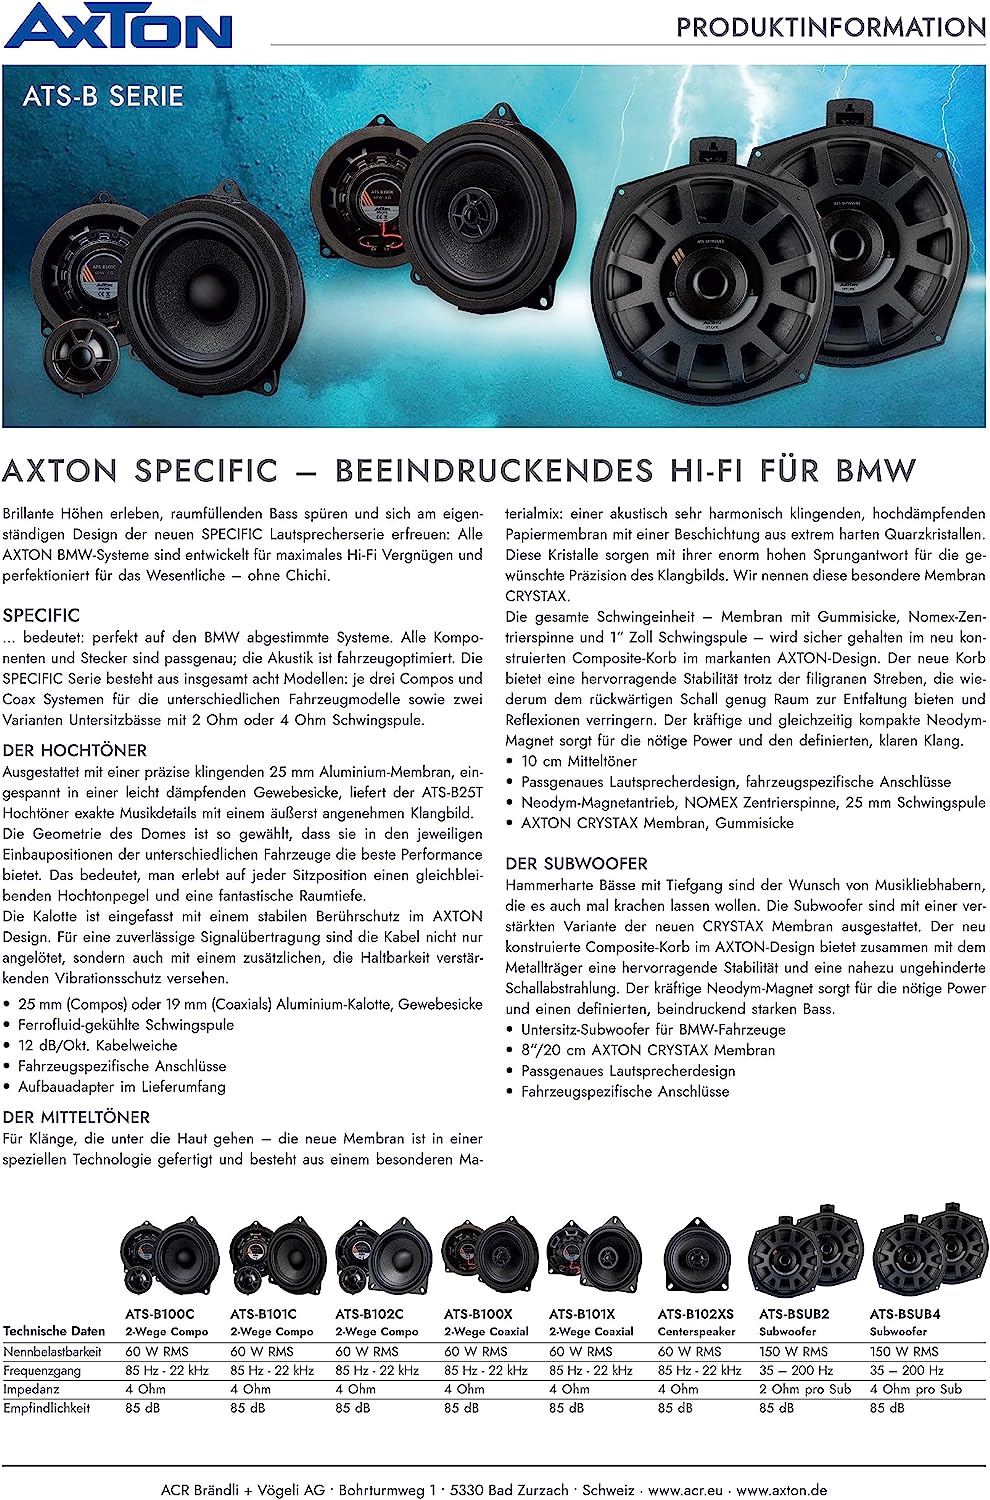 AXTON ATS-B101X 2-Wege 10 cm (4") Koaxial Lautsprecher System kompatibel mit BMW Fahrzeugen